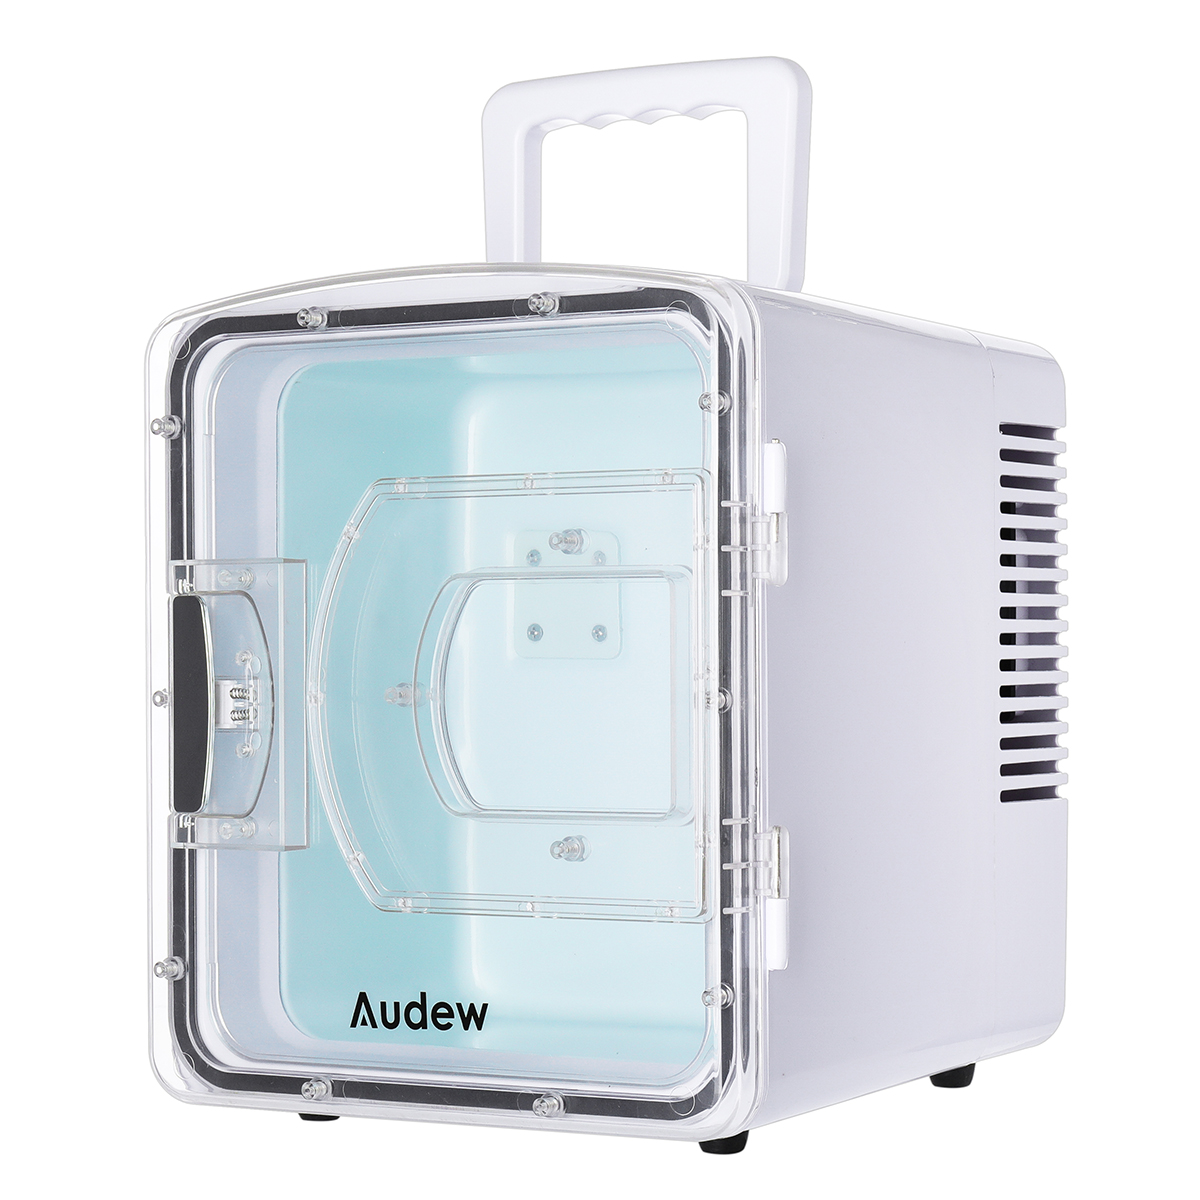 Portable Compact Personal Fridge Cools Heats Car Refrigerator 7